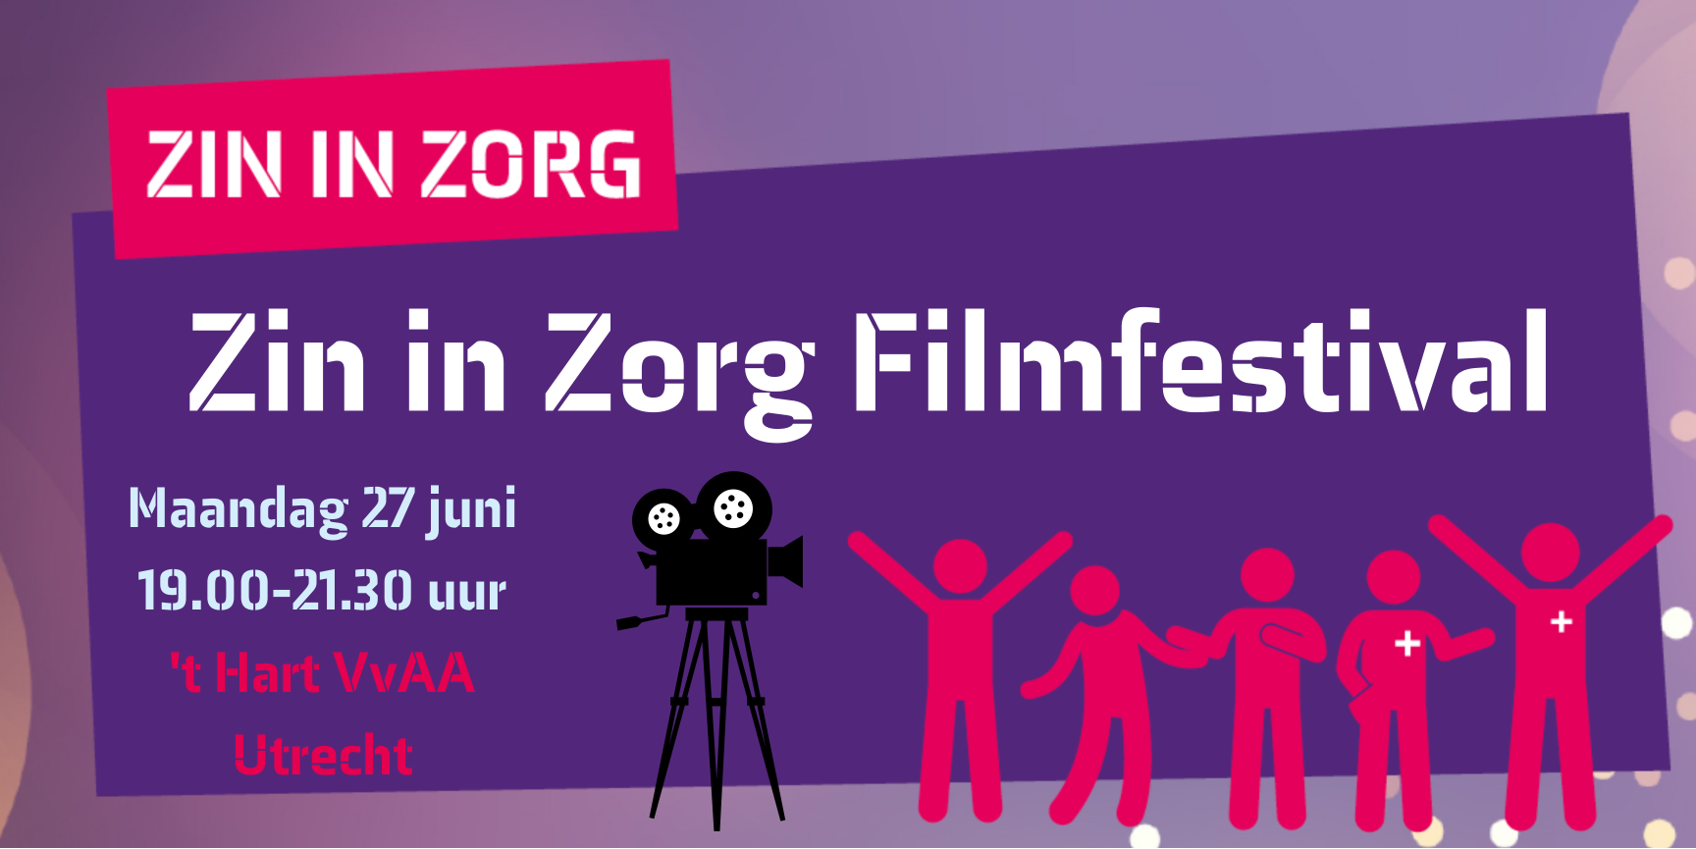 Zin_in_zorg_filmfestival.png